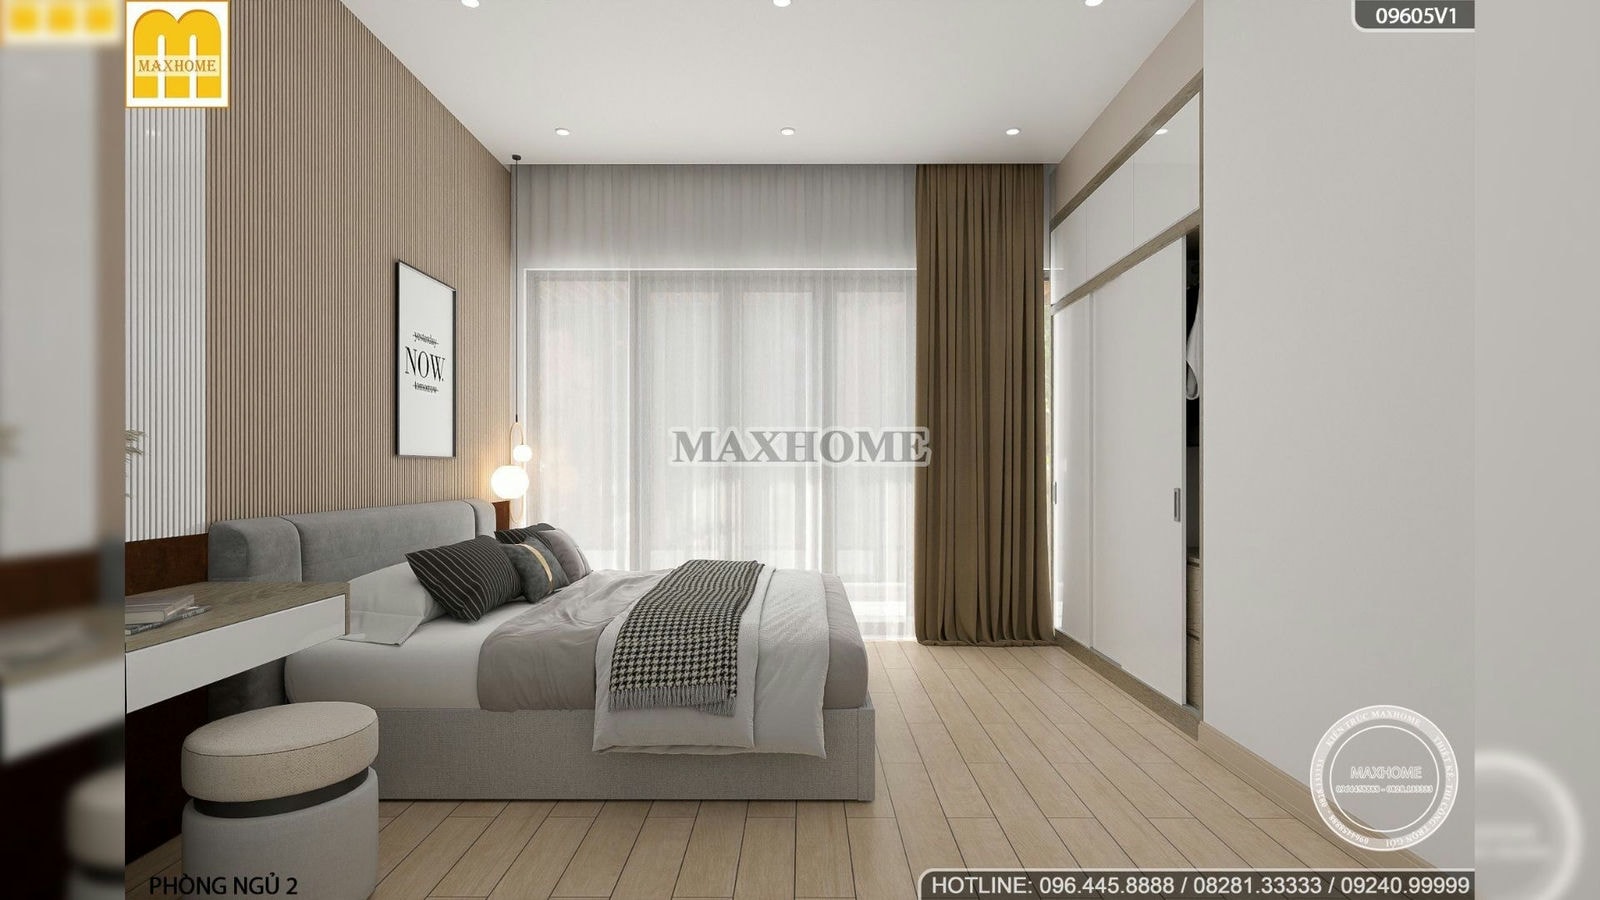 Thiết kế nội thất sáng tạo, độc đáo trong căn nhà đẹp như villa | MH02077